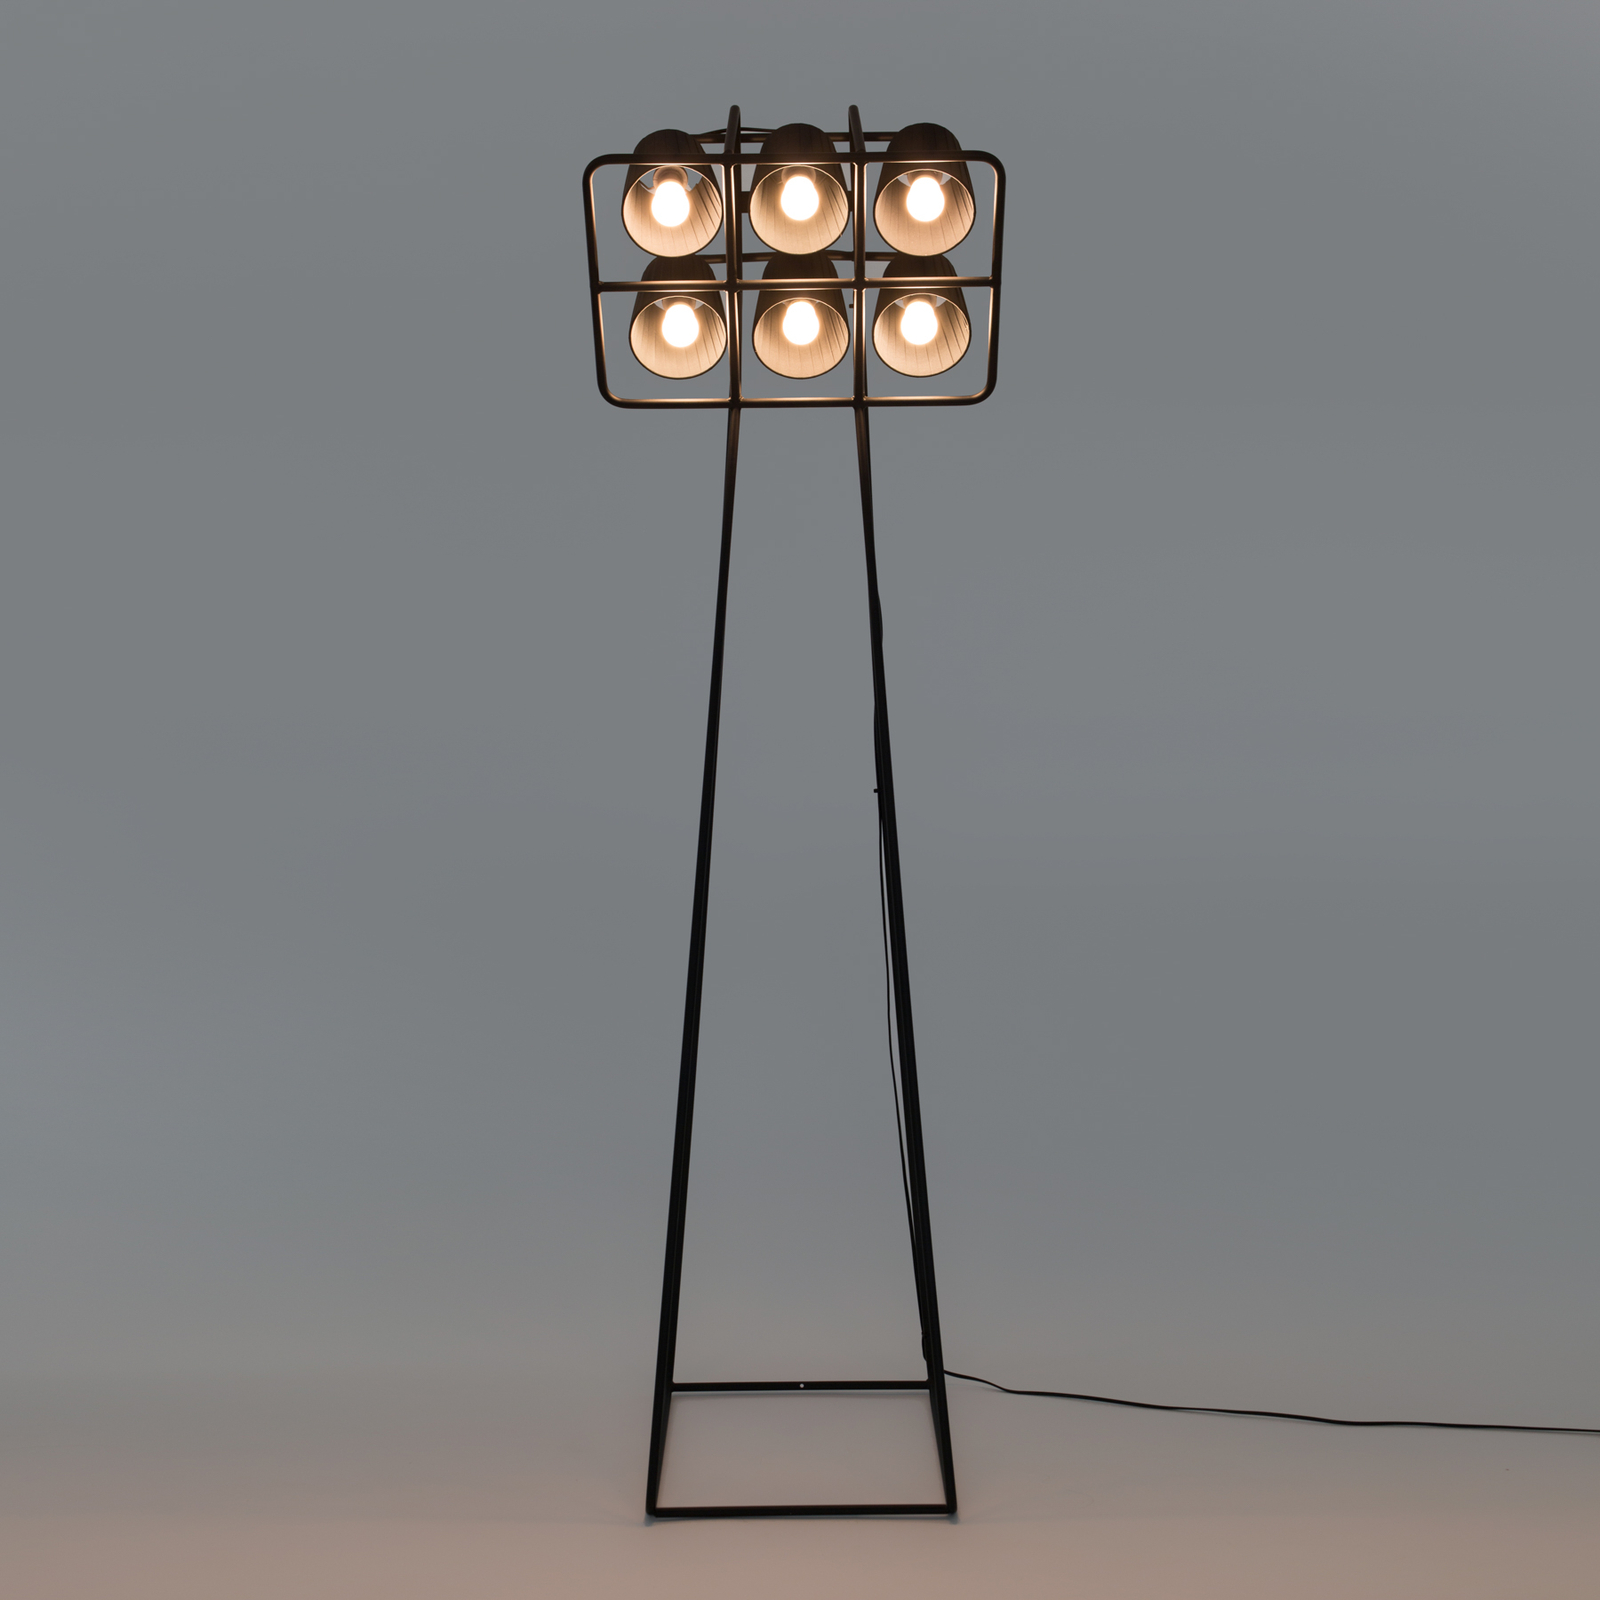 Golvlampa Multilamp, 6 lampor, svart